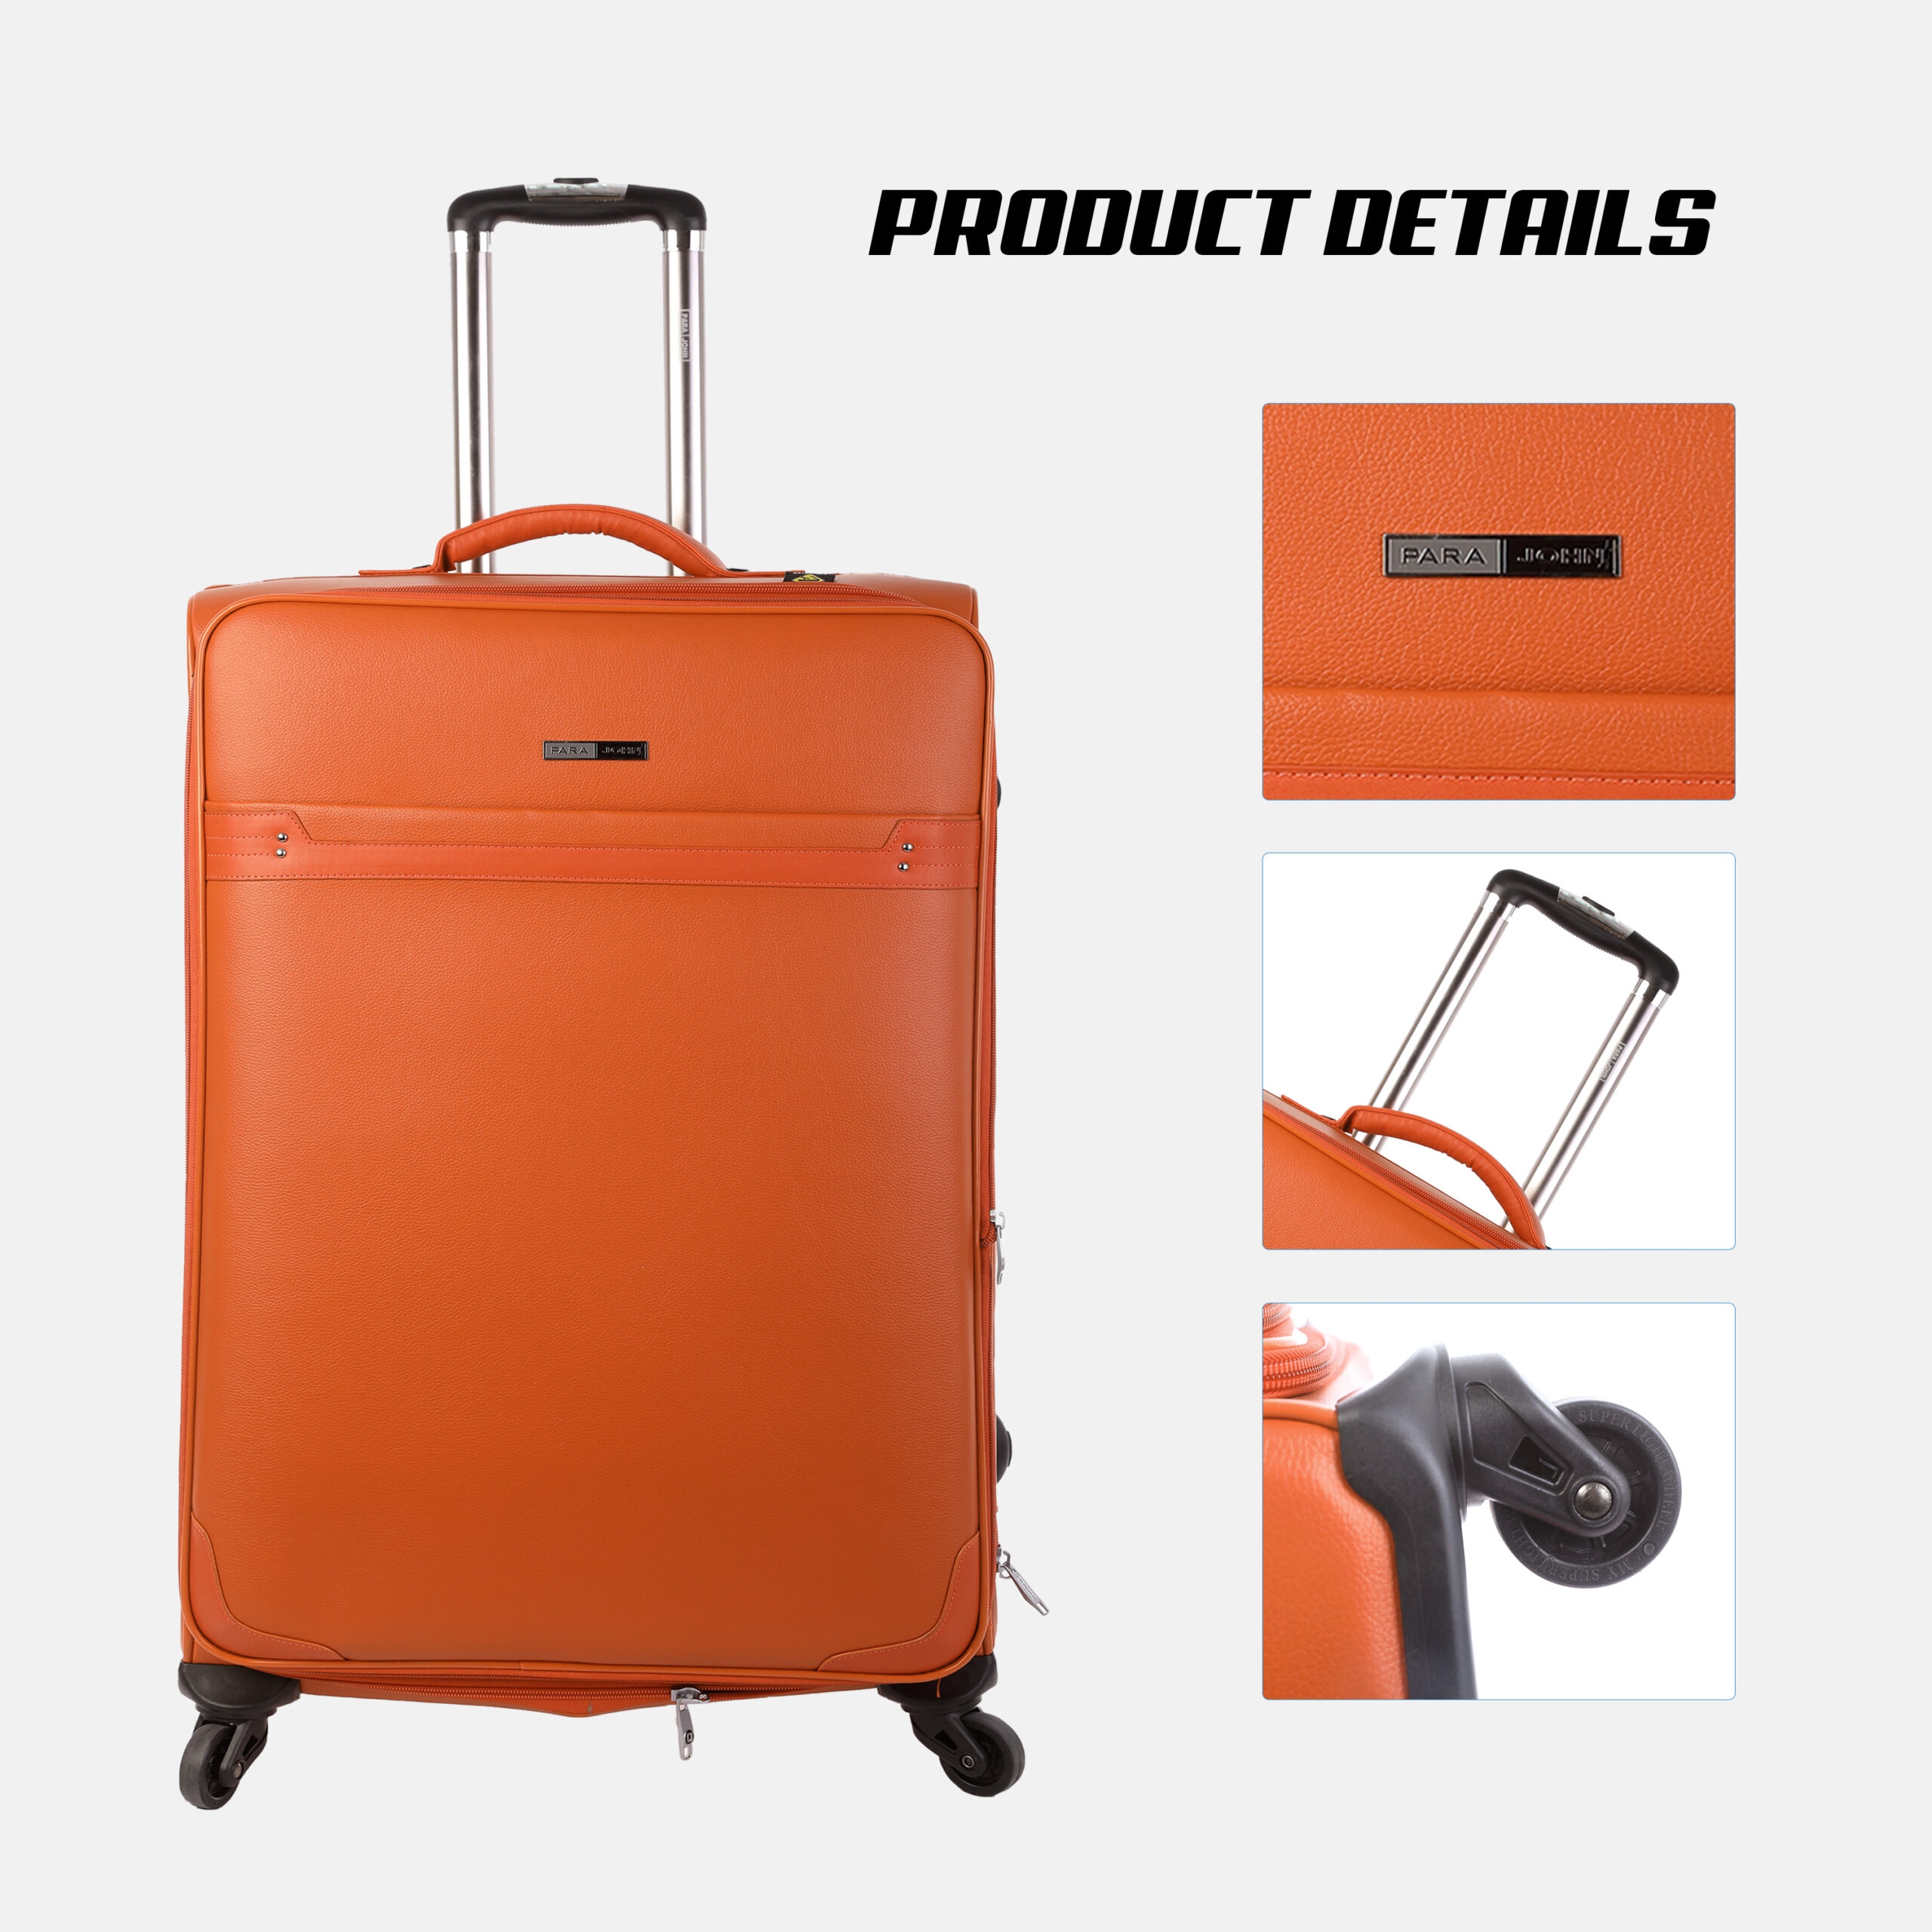 طقم حقائب سفر دوارة 4 حقائب (16 ، 20 ، 24 ، 28) بوصة ABS برتقالي PARA JOHN - 4 Pcs Travel Luggage Suitcase Trolley Set - PVC Leather Cabin Trolley Bag – Cabin size suitcase for Business Travellers - (16 ، 20 ، 24 ، 28) inch